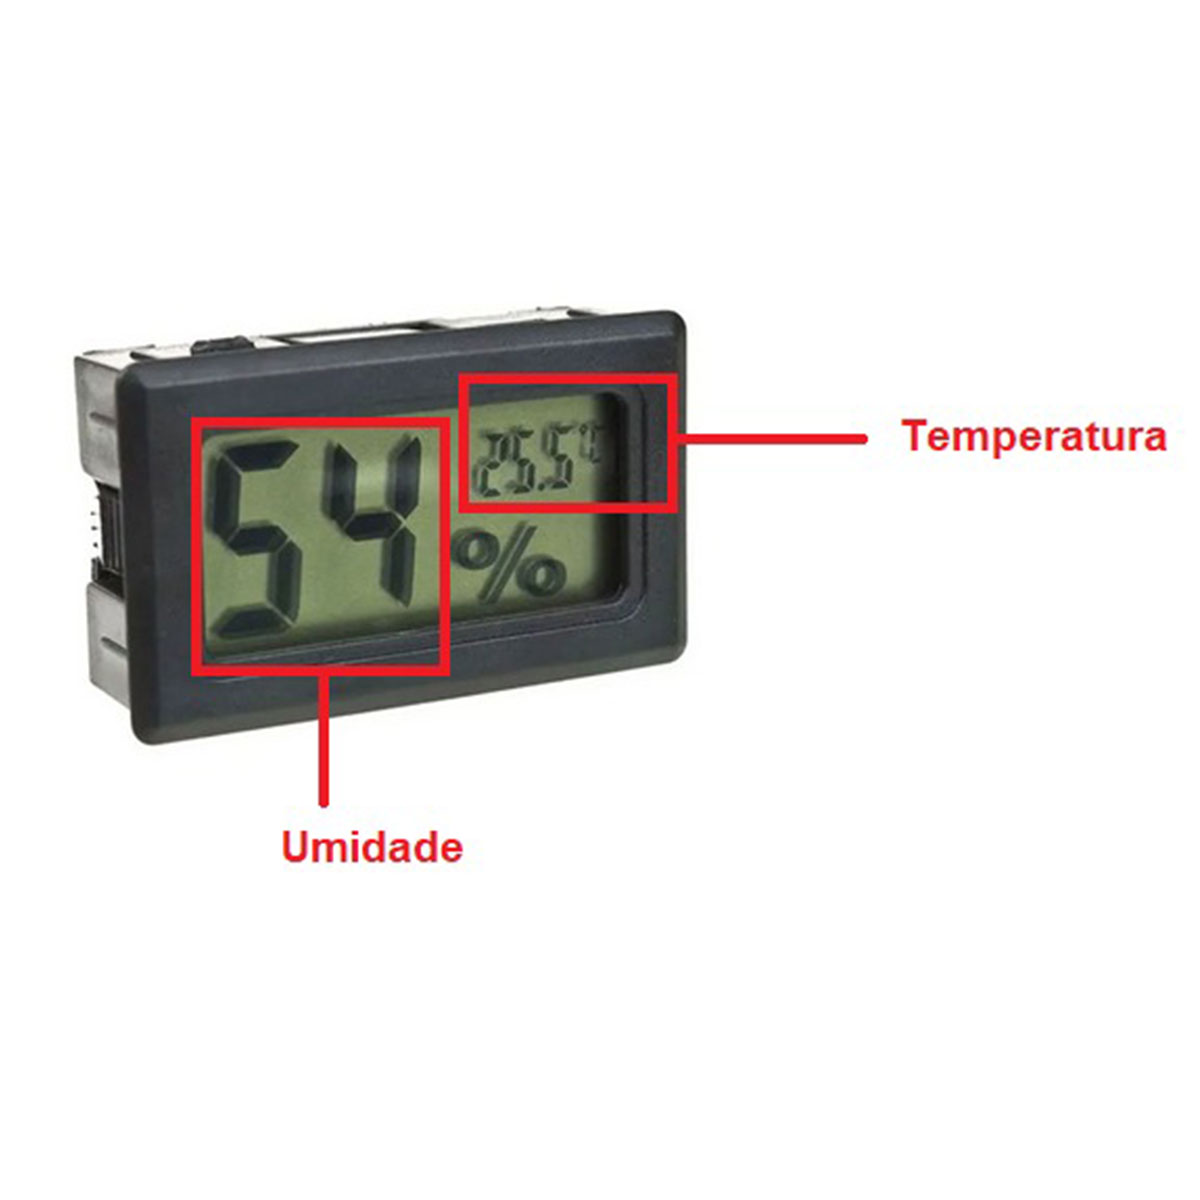 2x Mini Termômetro - Higrômetro Digital / Mede Temperatura e Umidade COM Baterias - Preto